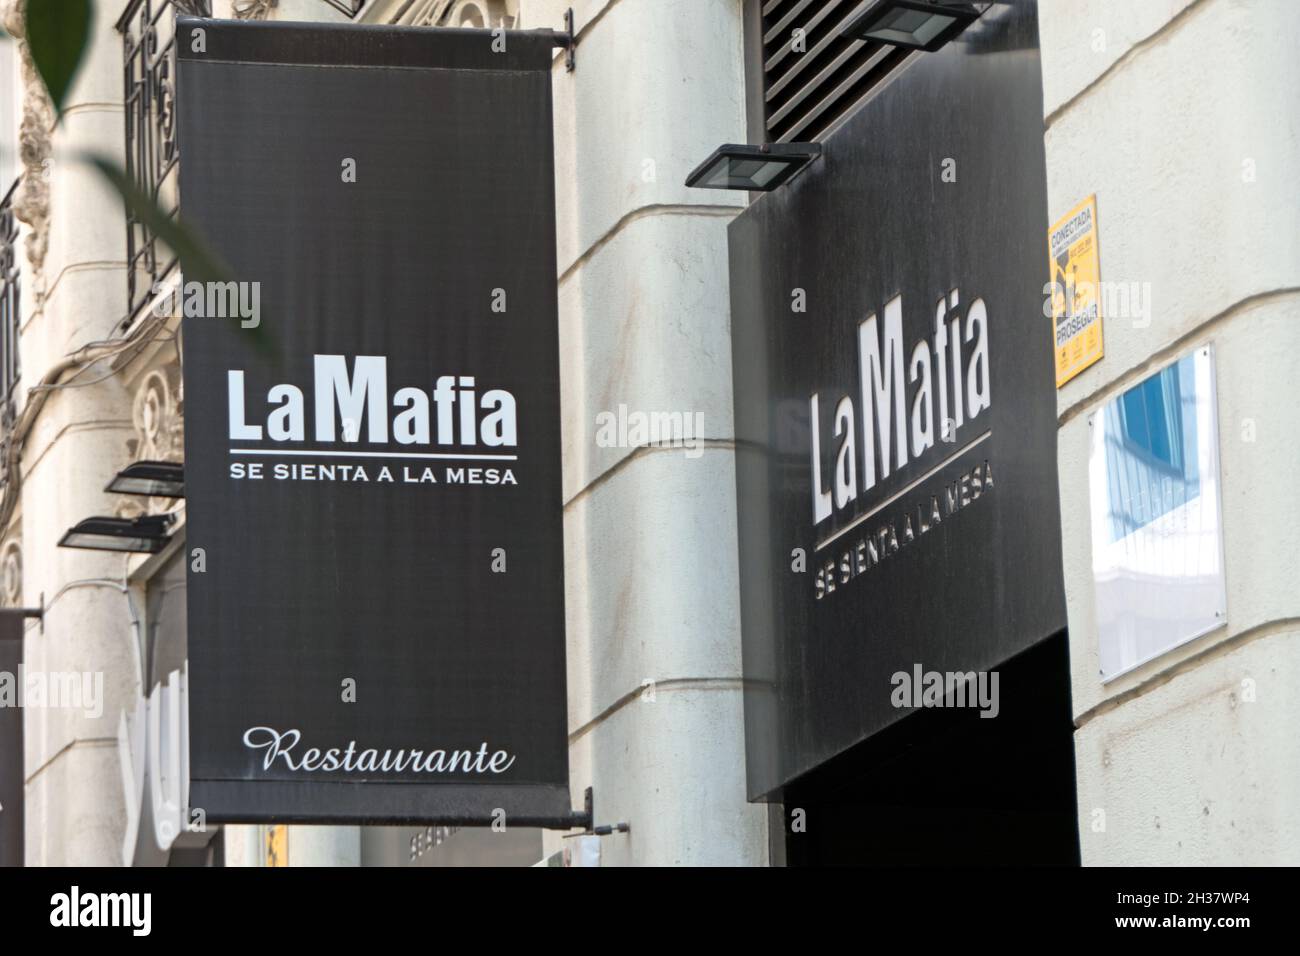 Controversial sign for La Mafia, Italian restaurant in Valencia, Spain ...